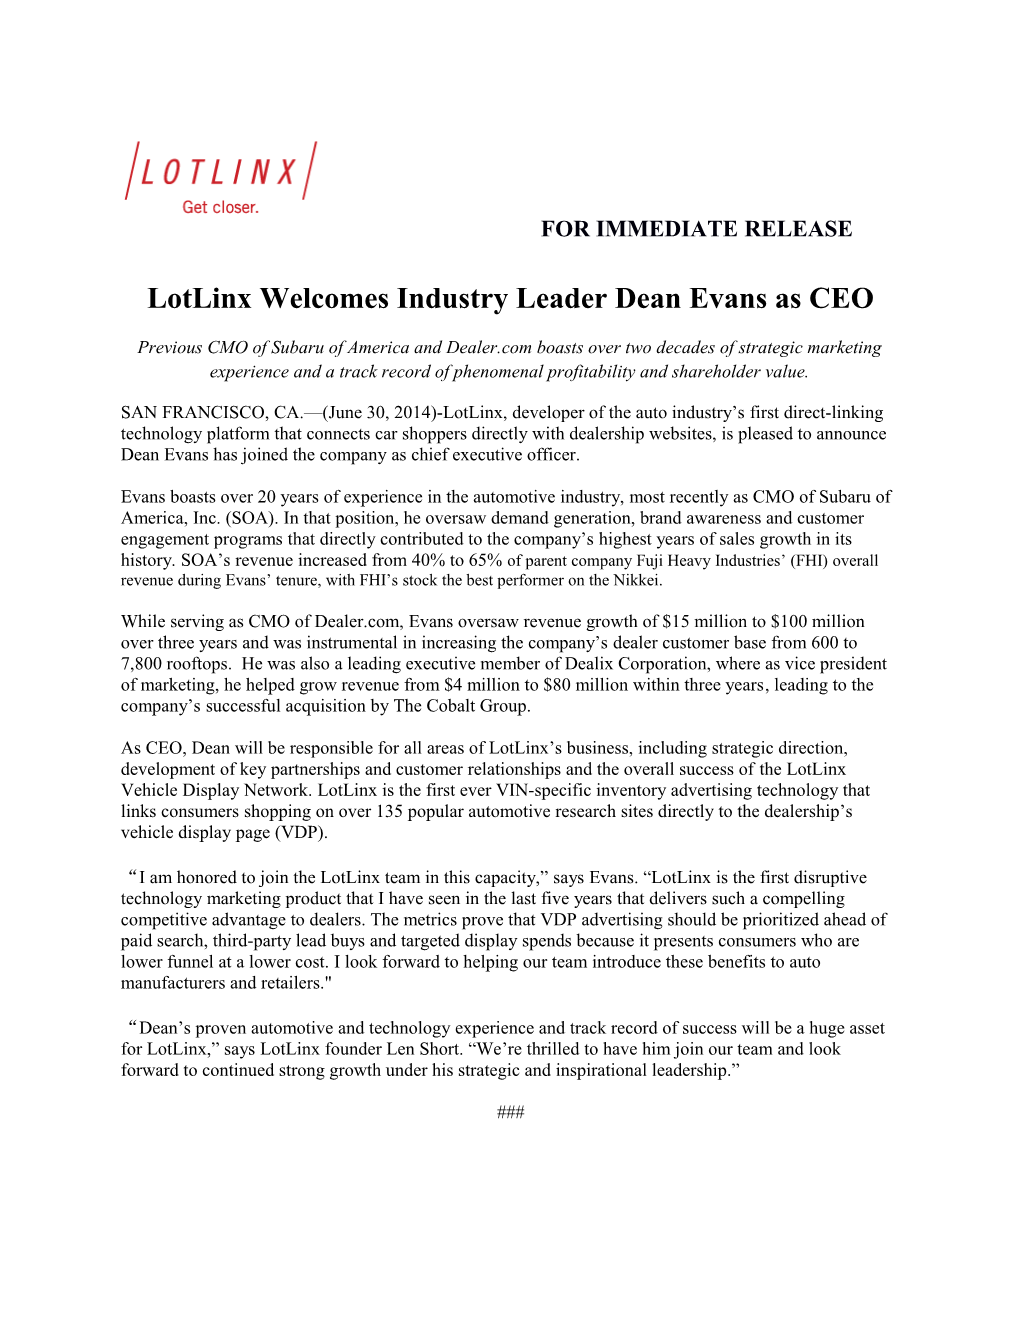 Lotlinx Welcomes Industry Leader Dean Evans As CEO